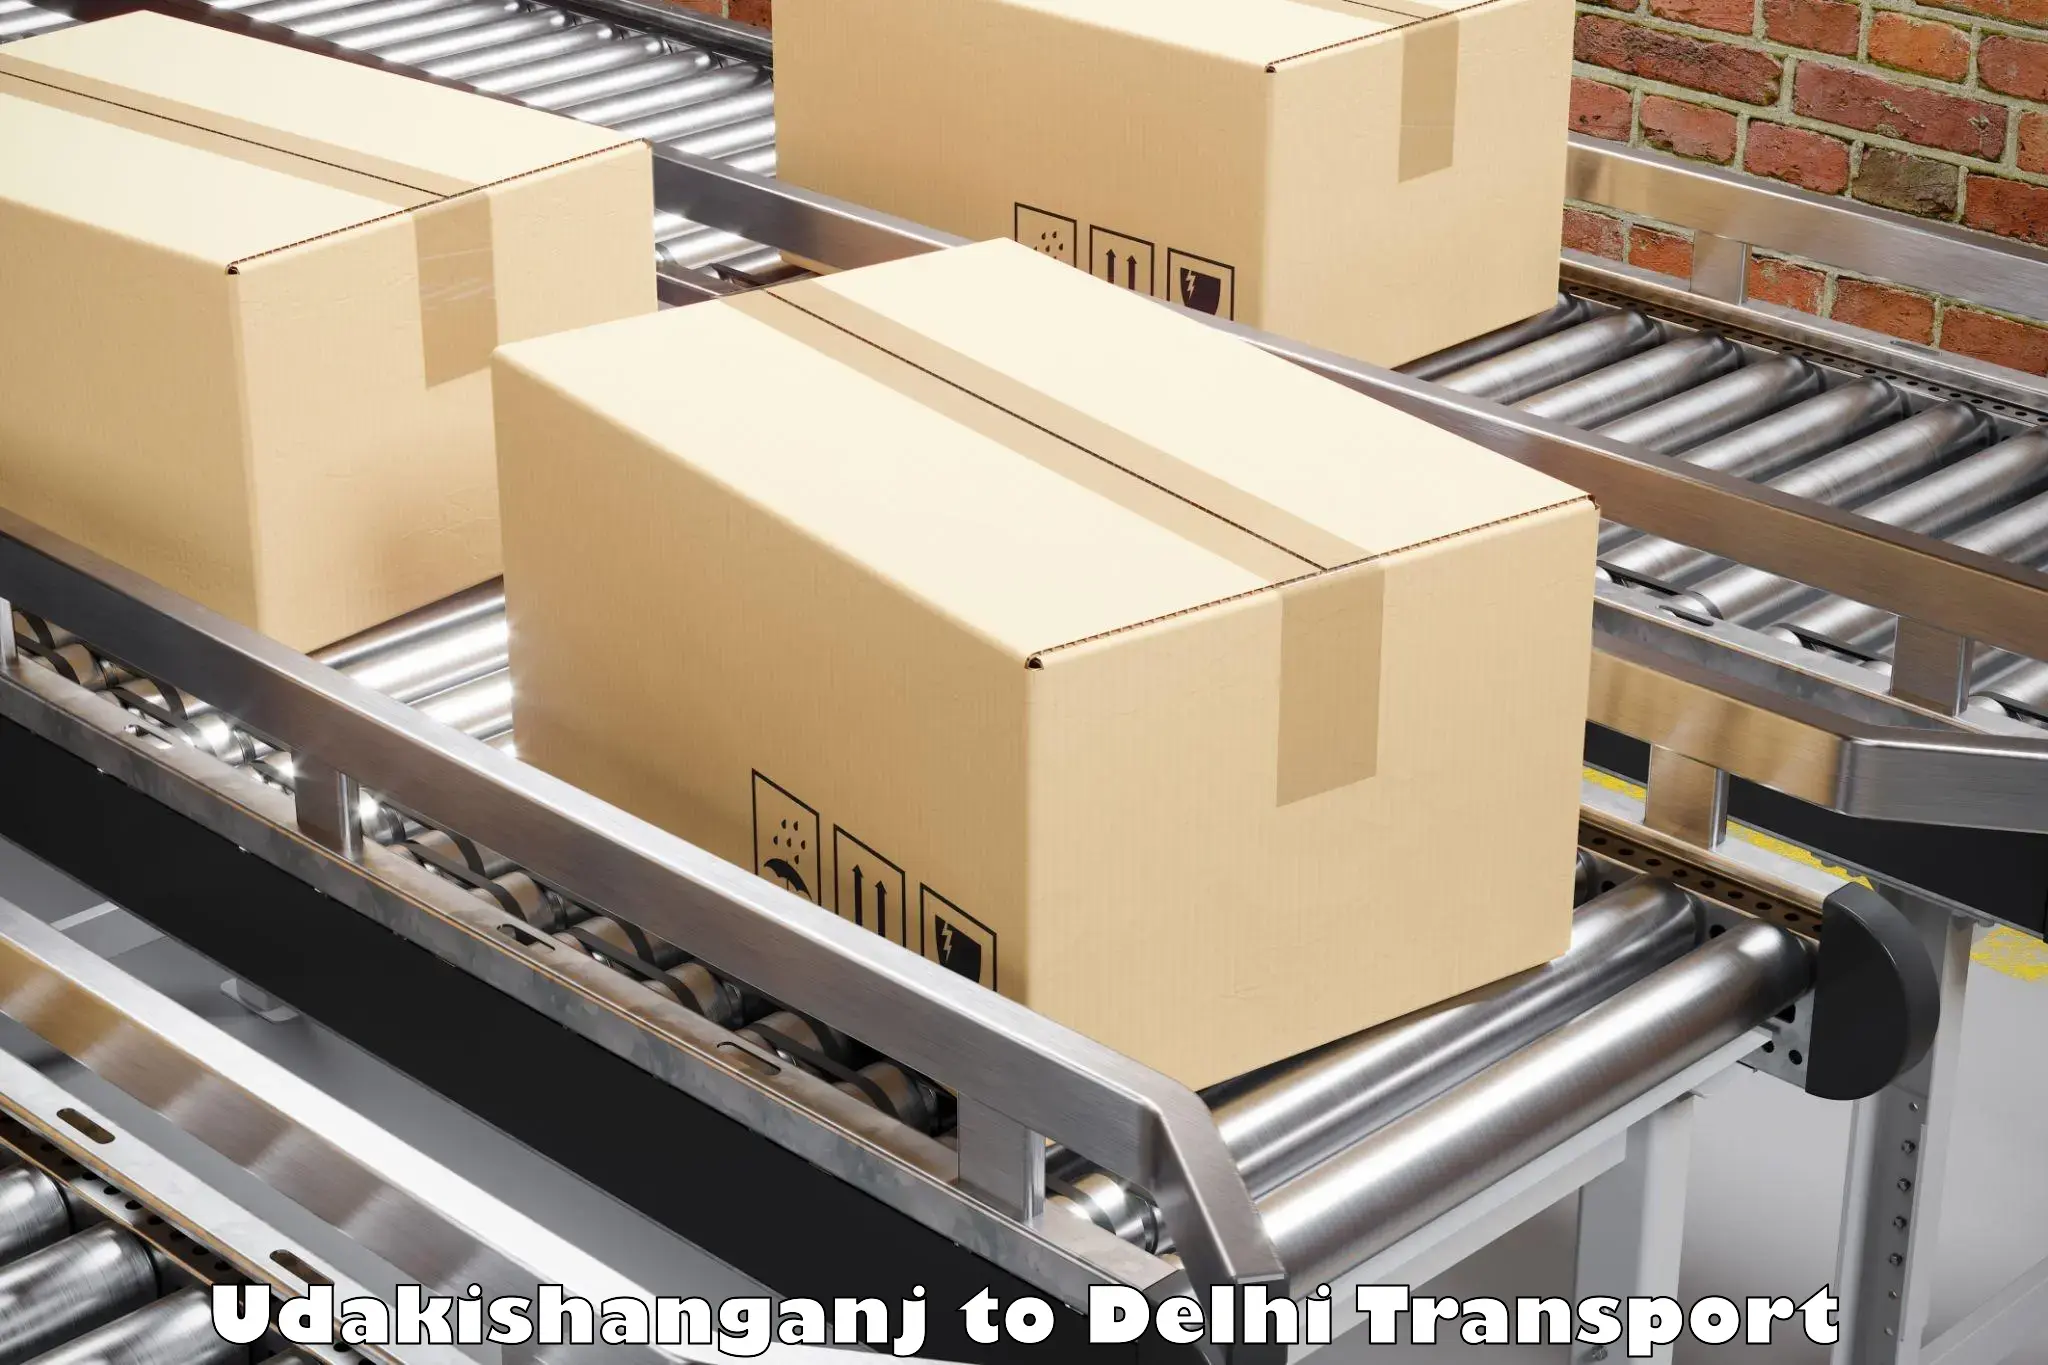 Luggage transport services Udakishanganj to Naraina Industrial Estate